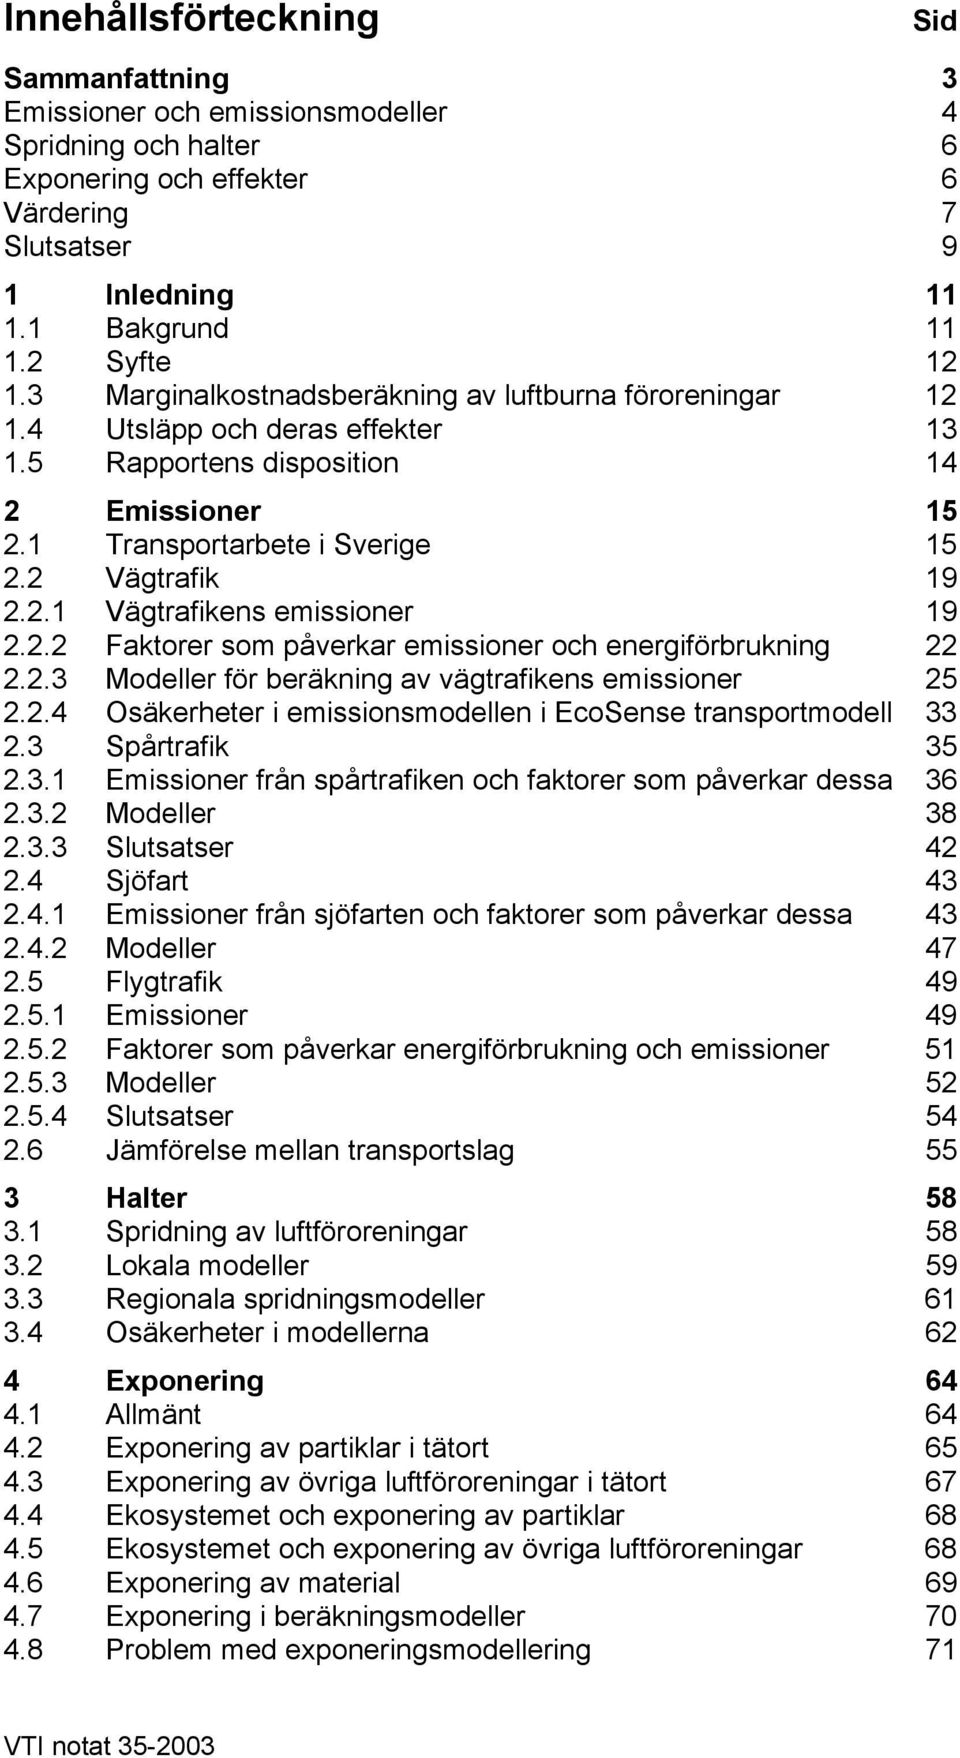 2.2 Faktorer som påverkar emissioner och energiförbrukning 22 2.2.3 Modeller för beräkning av vägtrafikens emissioner 25 2.2.4 Osäkerheter i emissionsmodellen i EcoSense transportmodell 33 2.